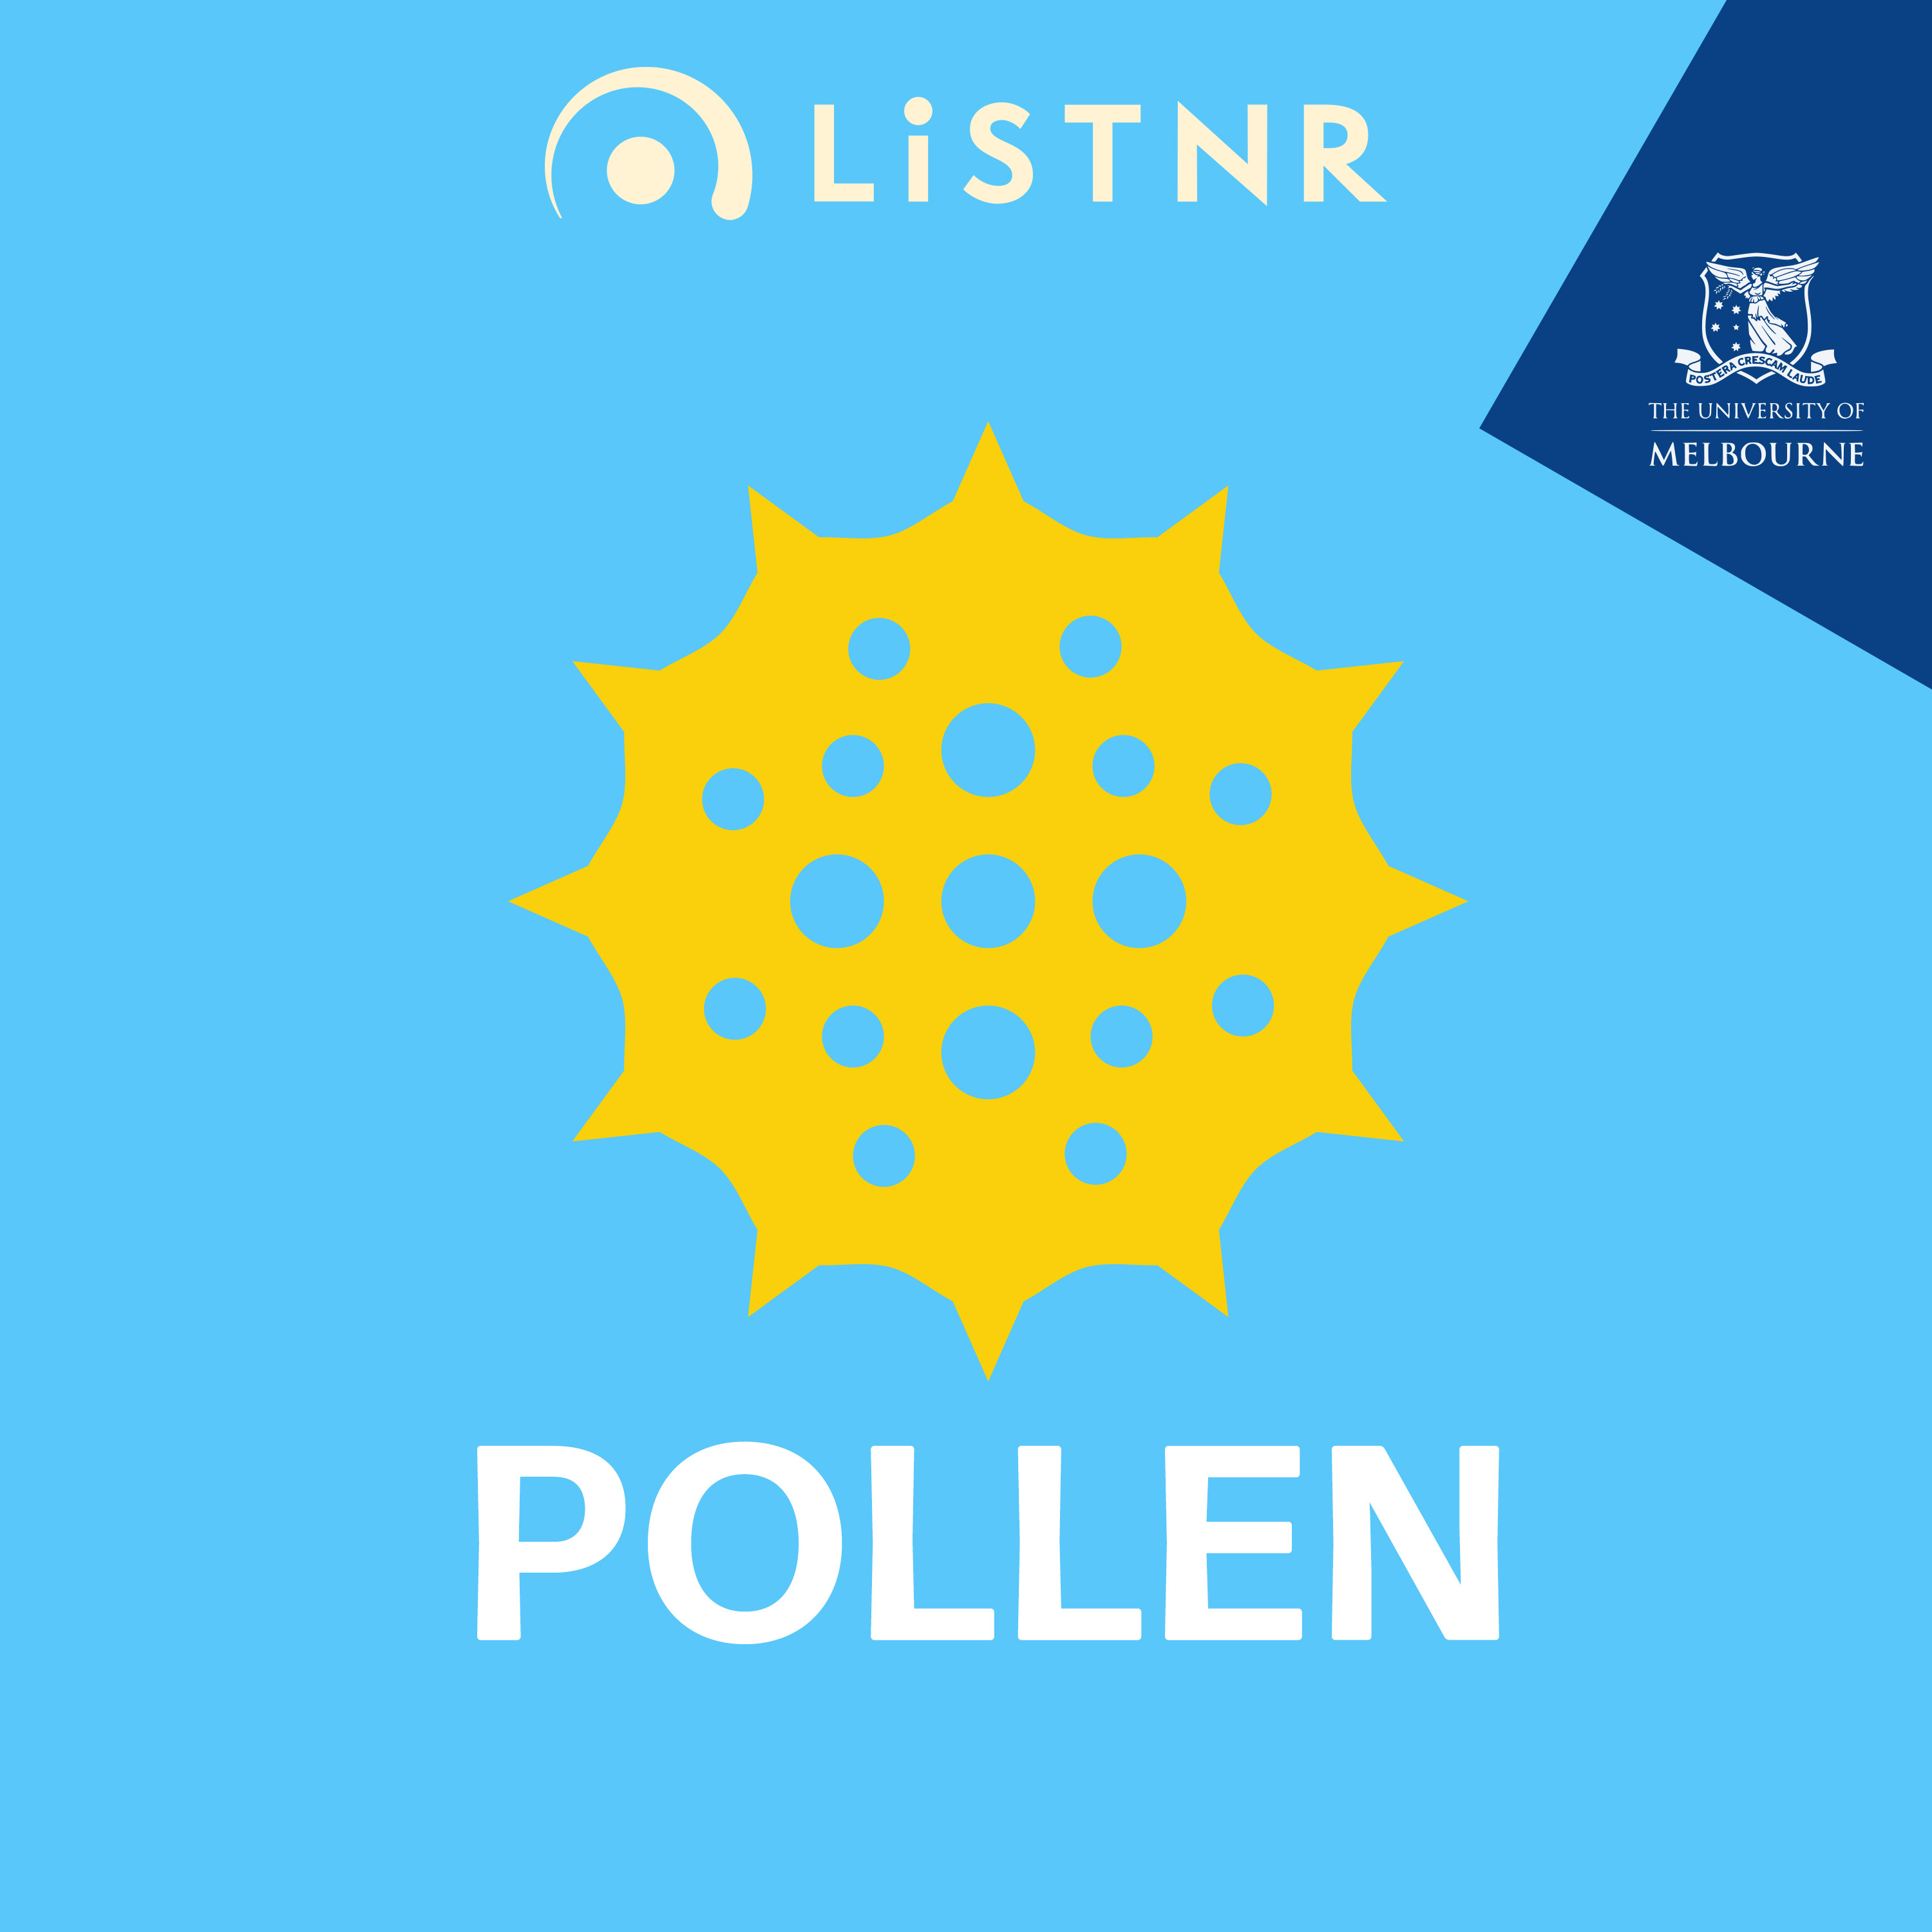 It's pollen season